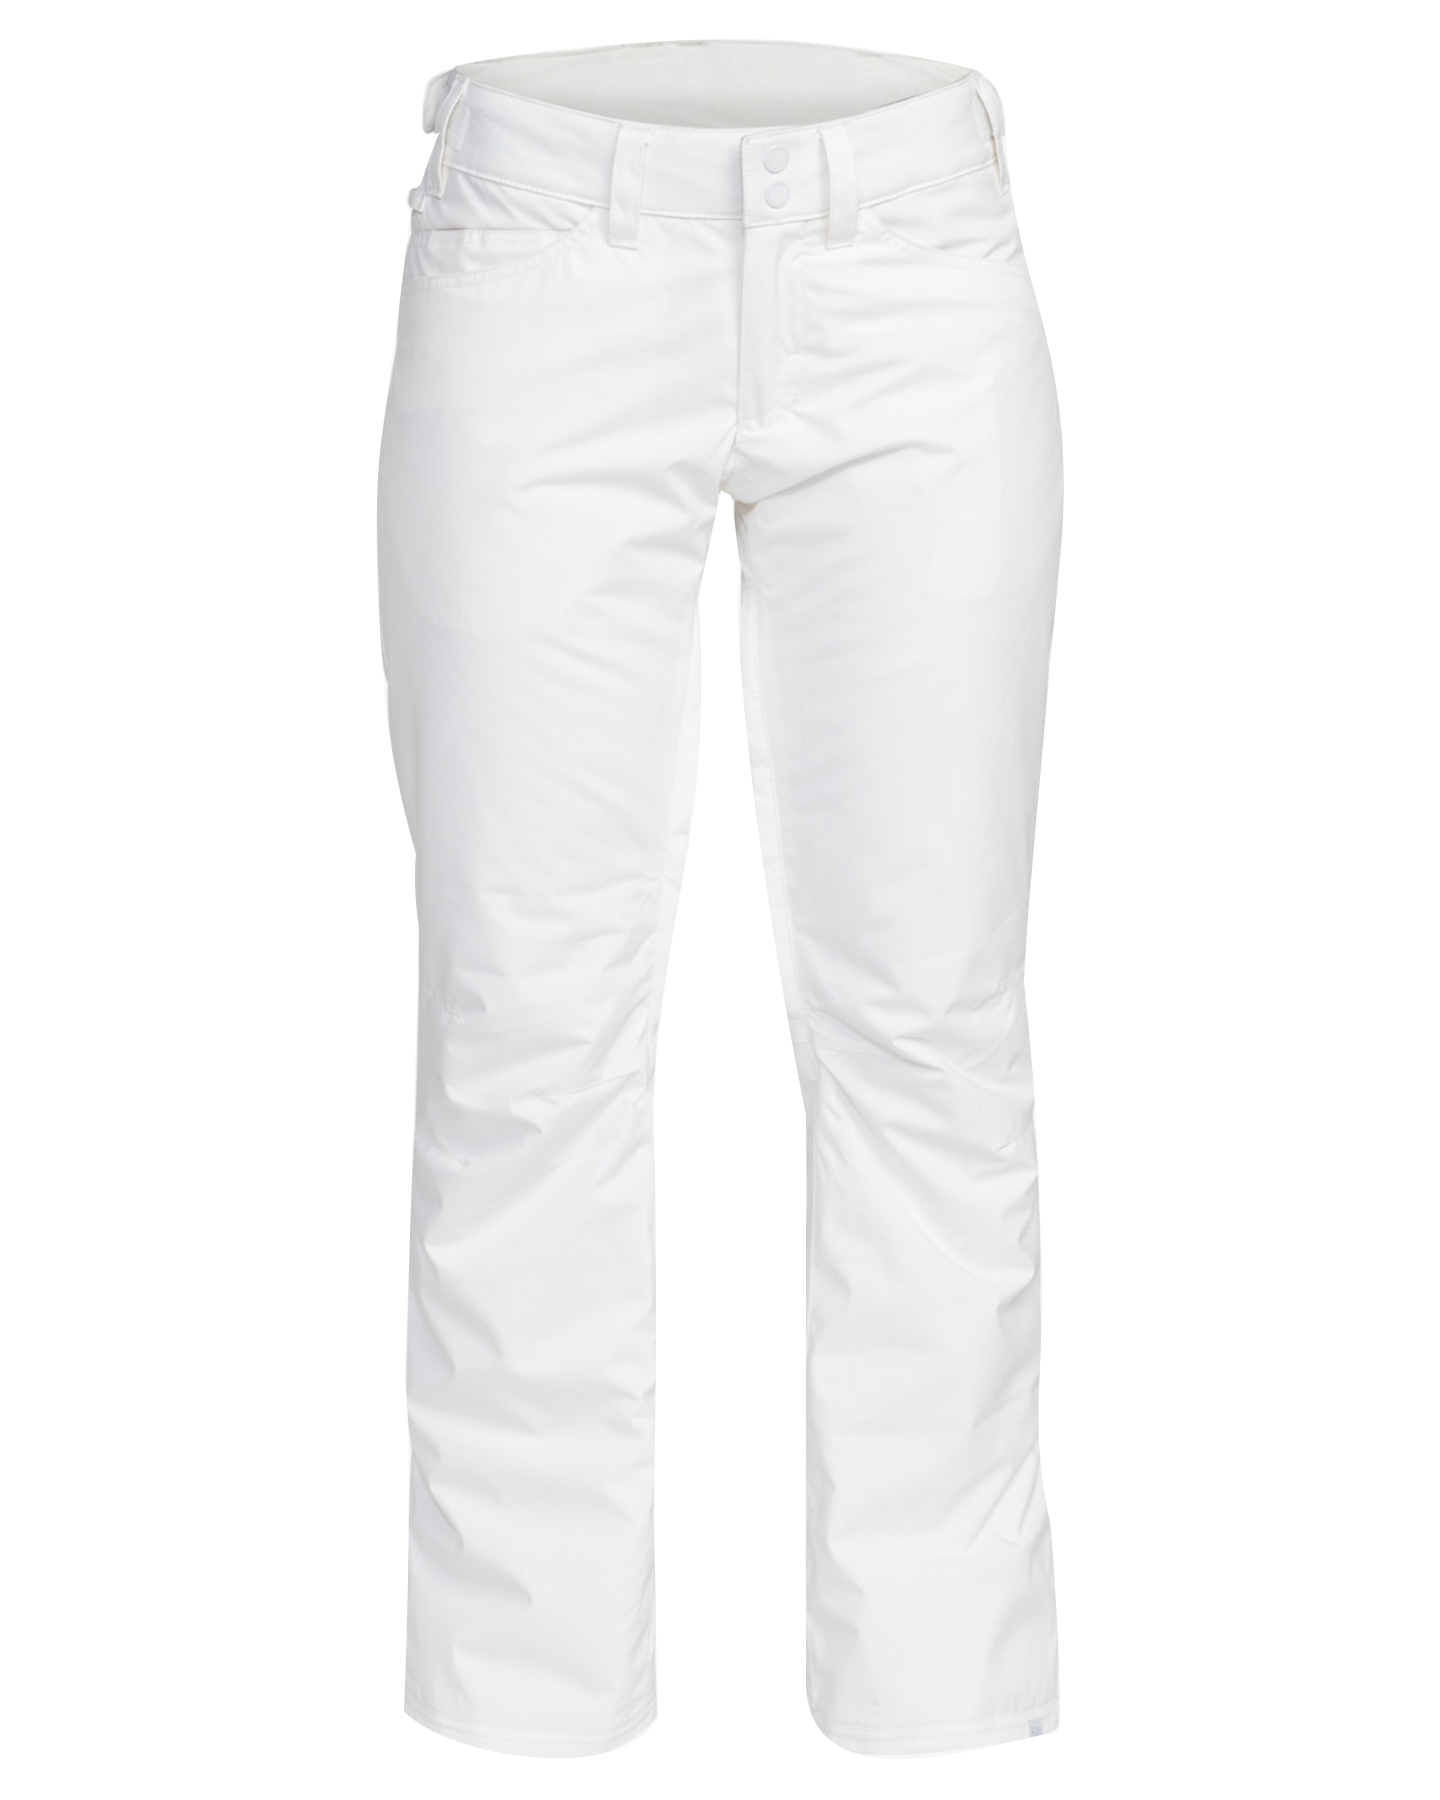 Roxy Women's Backyard Technical Snow Pants - Bright White Women's Snow Pants - Trojan Wake Ski Snow